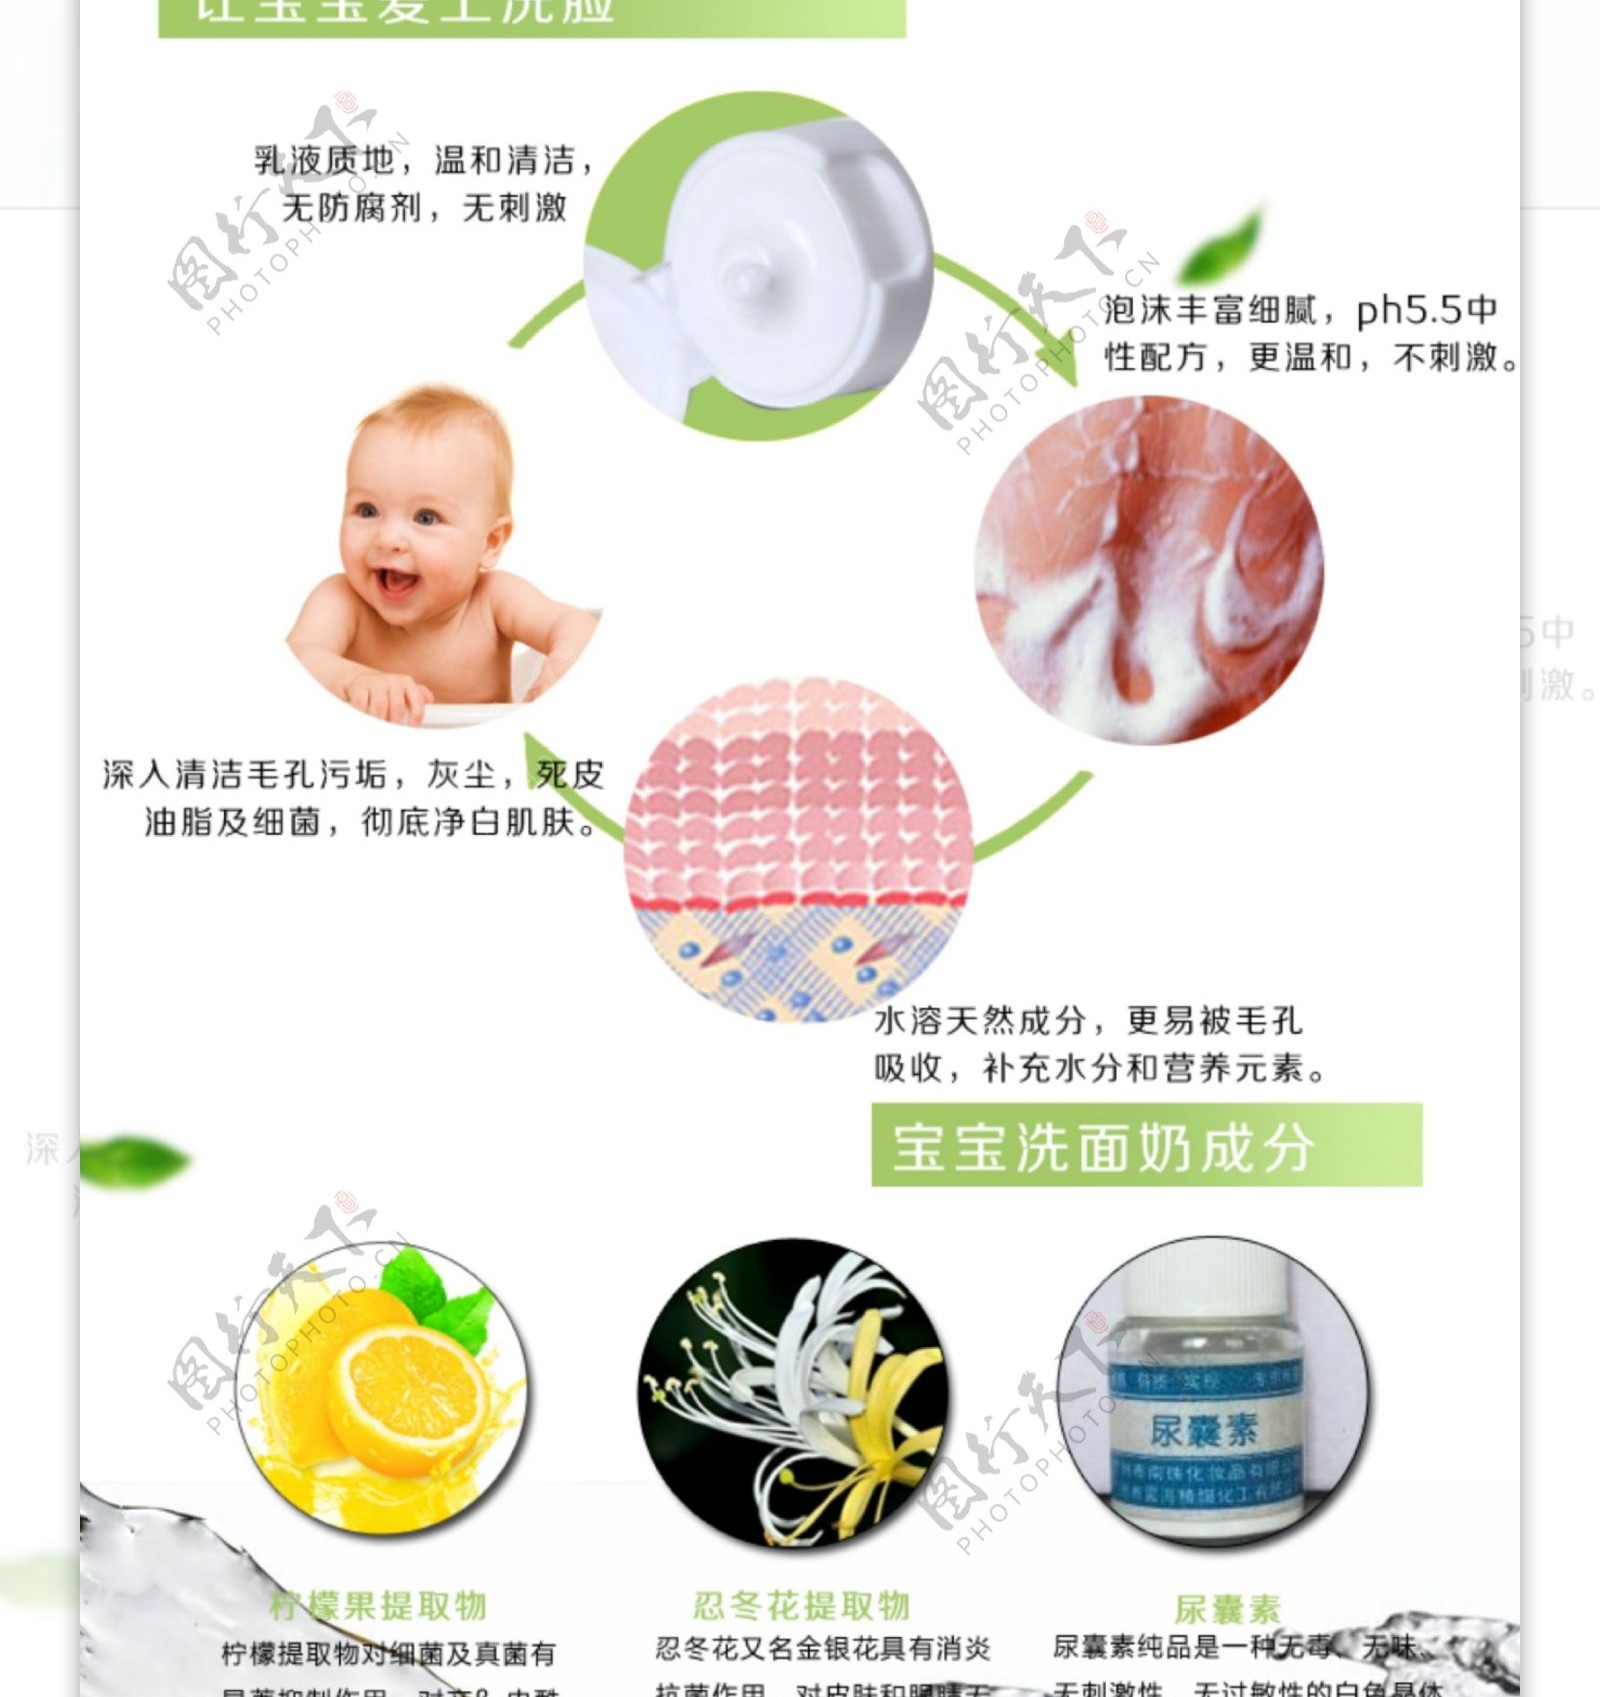 宝宝护理系列产品详情页关爱宝宝健康